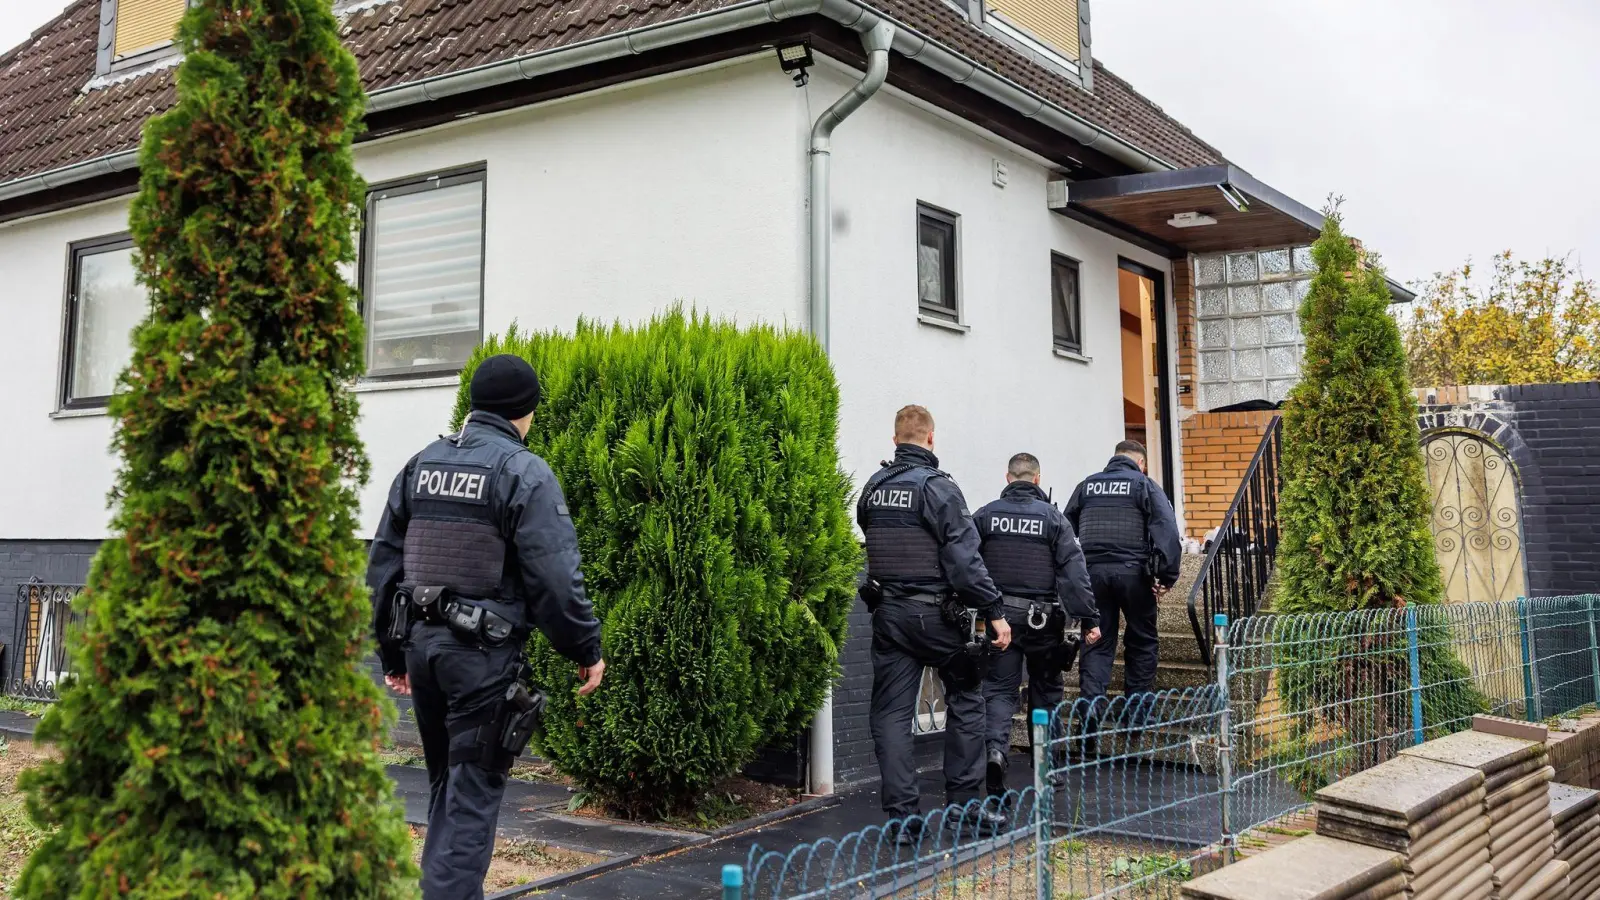 Polizeibeamte durchsuchen ein Haus in einer Wohnsiedlung in Garbsen. (Foto: Ole Spata/dpa)